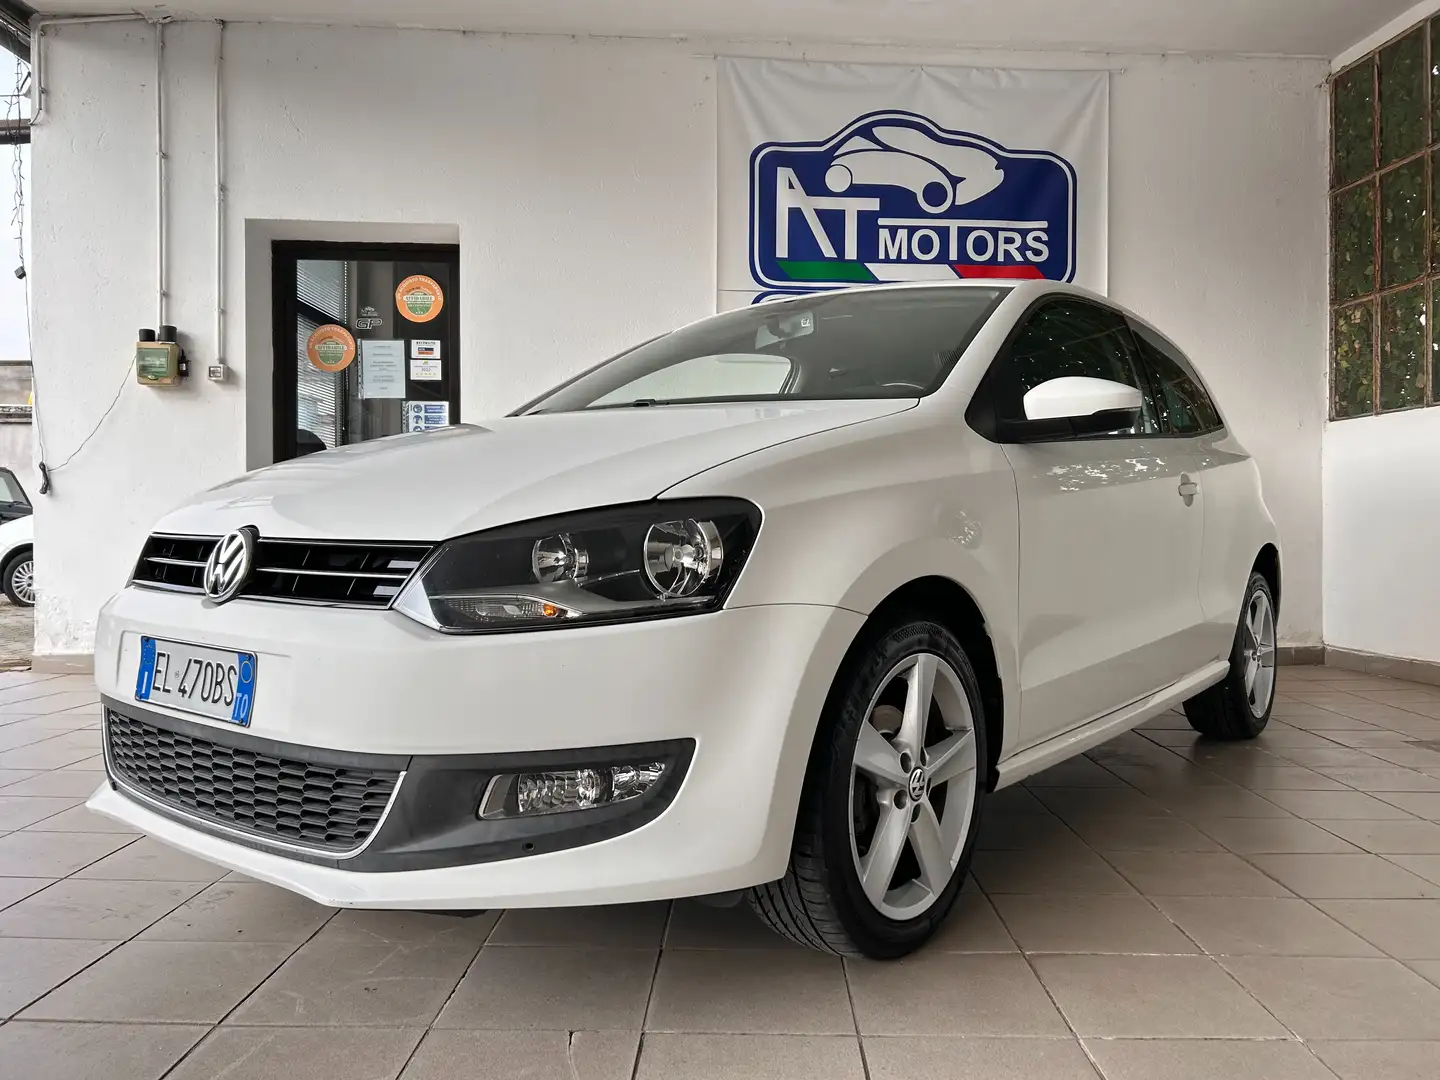 Volkswagen Polo usata a Carignano - Torino per € 7.500,-